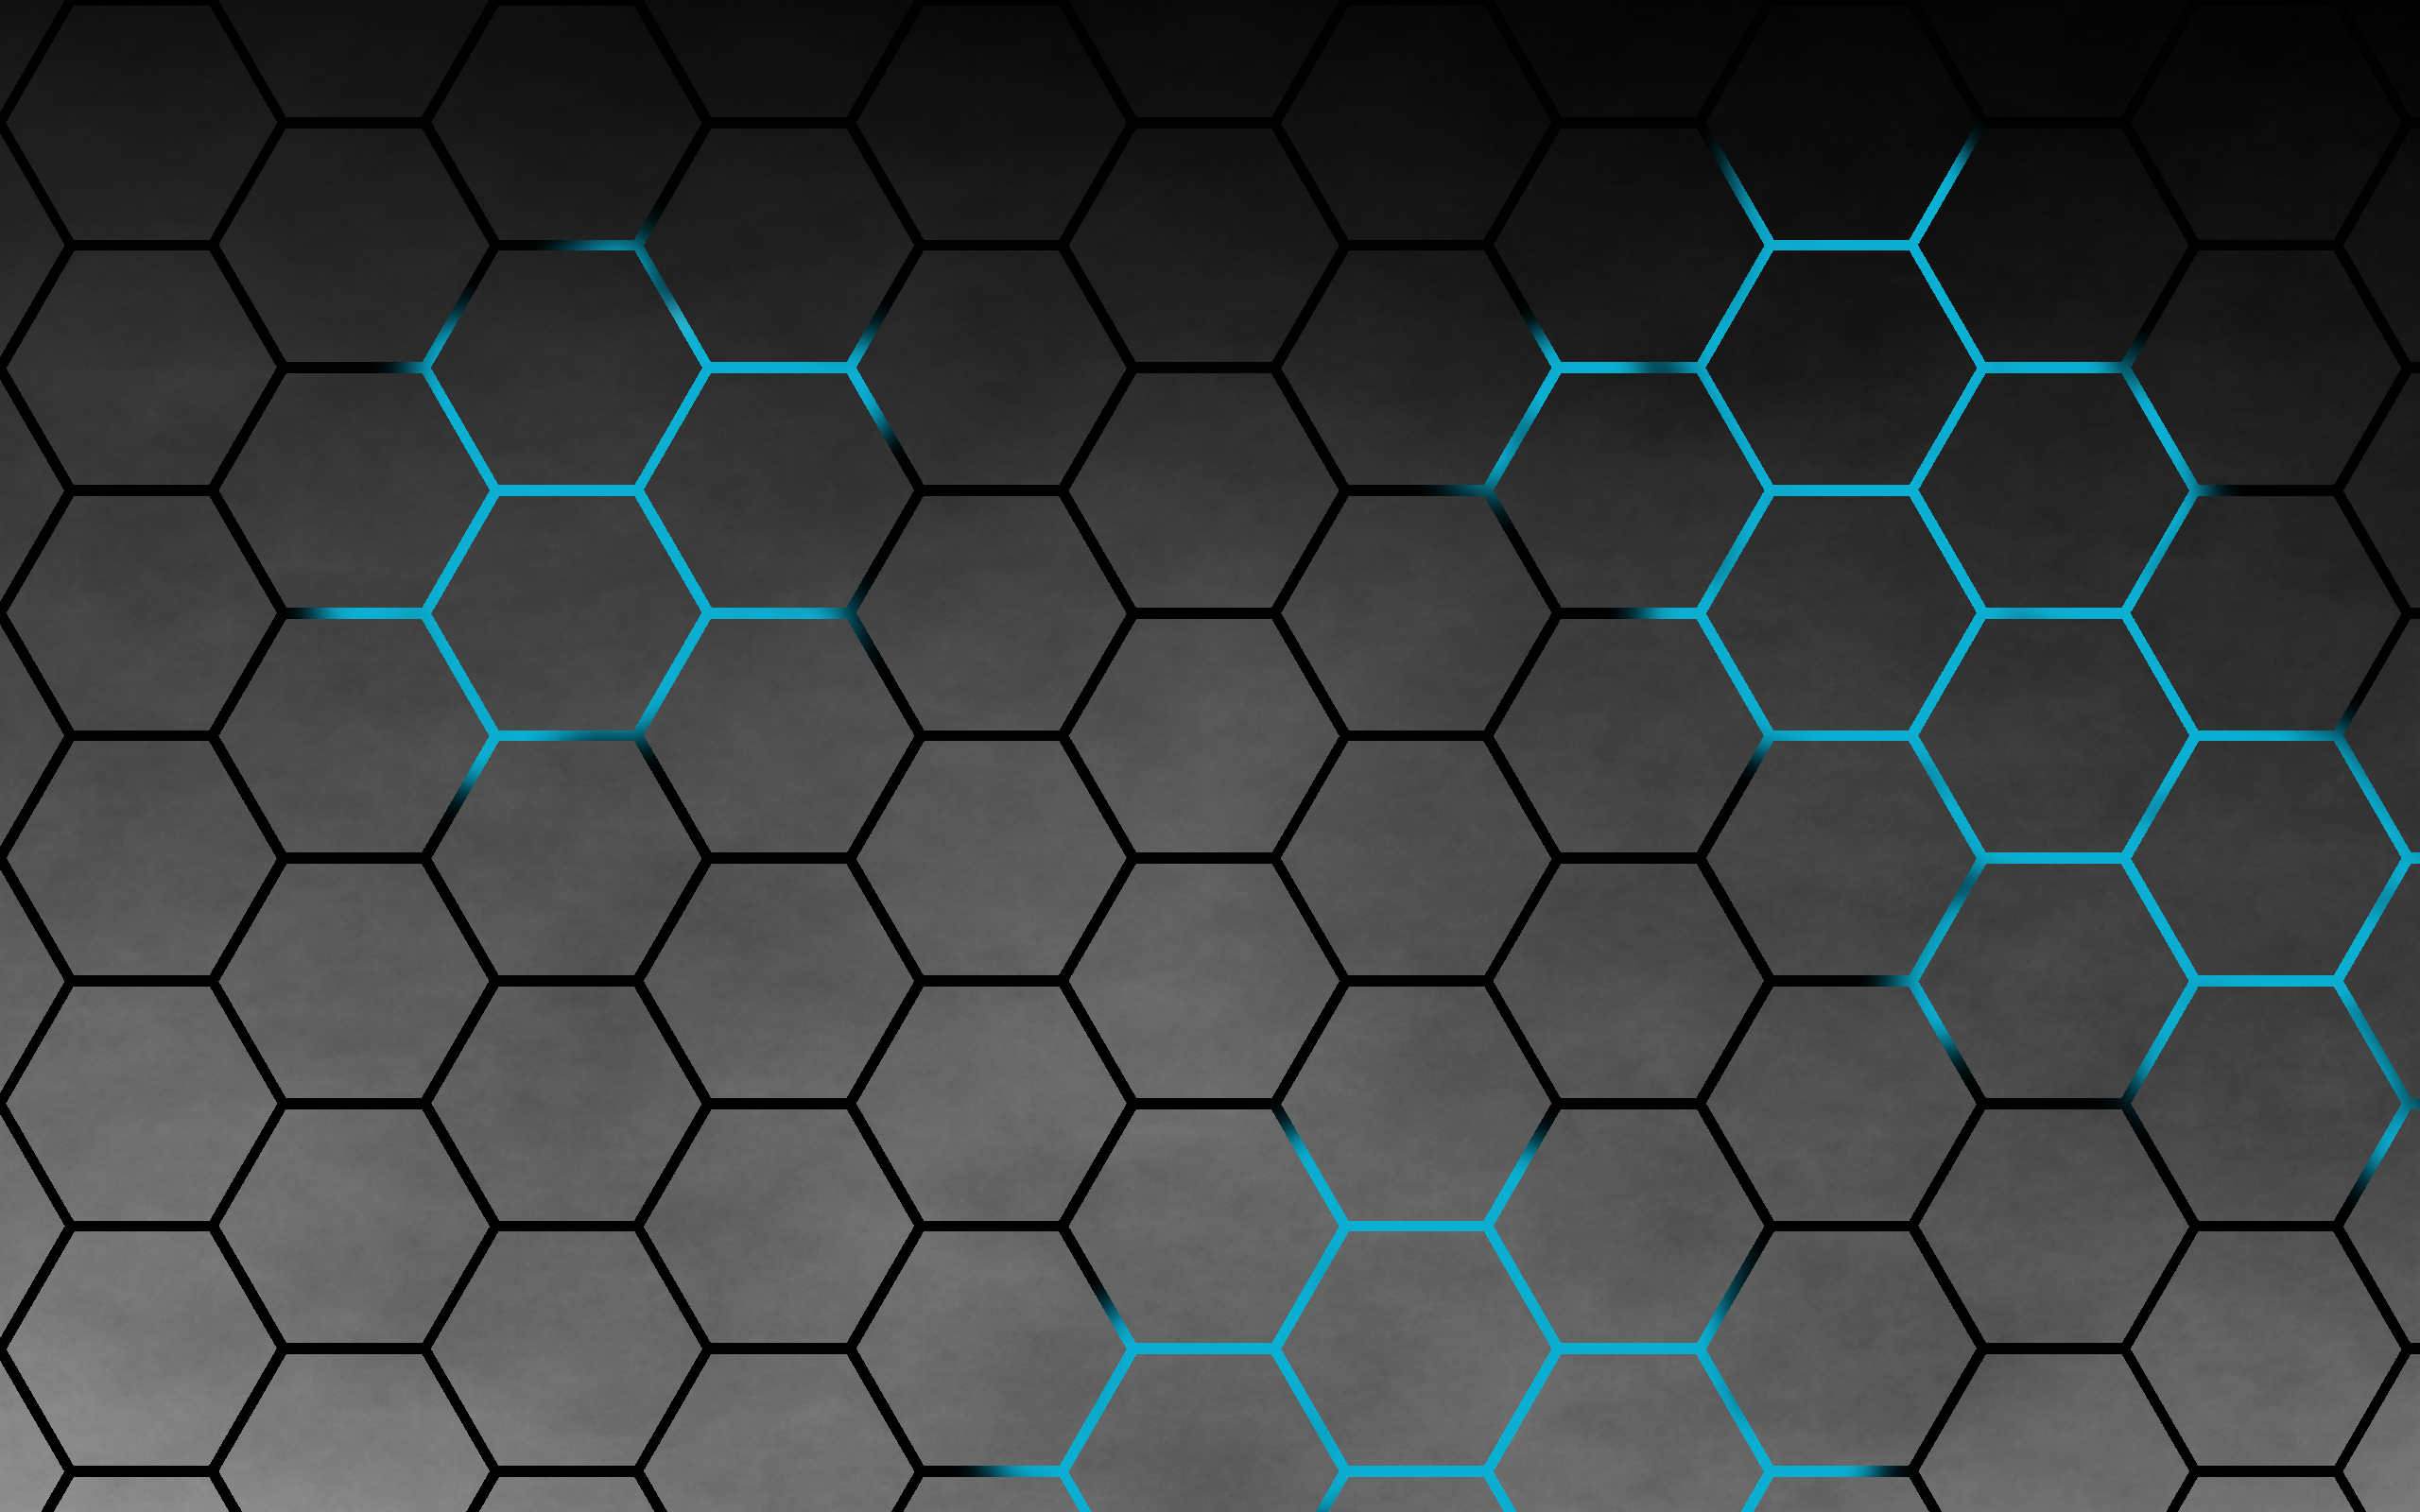 Honeycomb Desktop Wallpaper